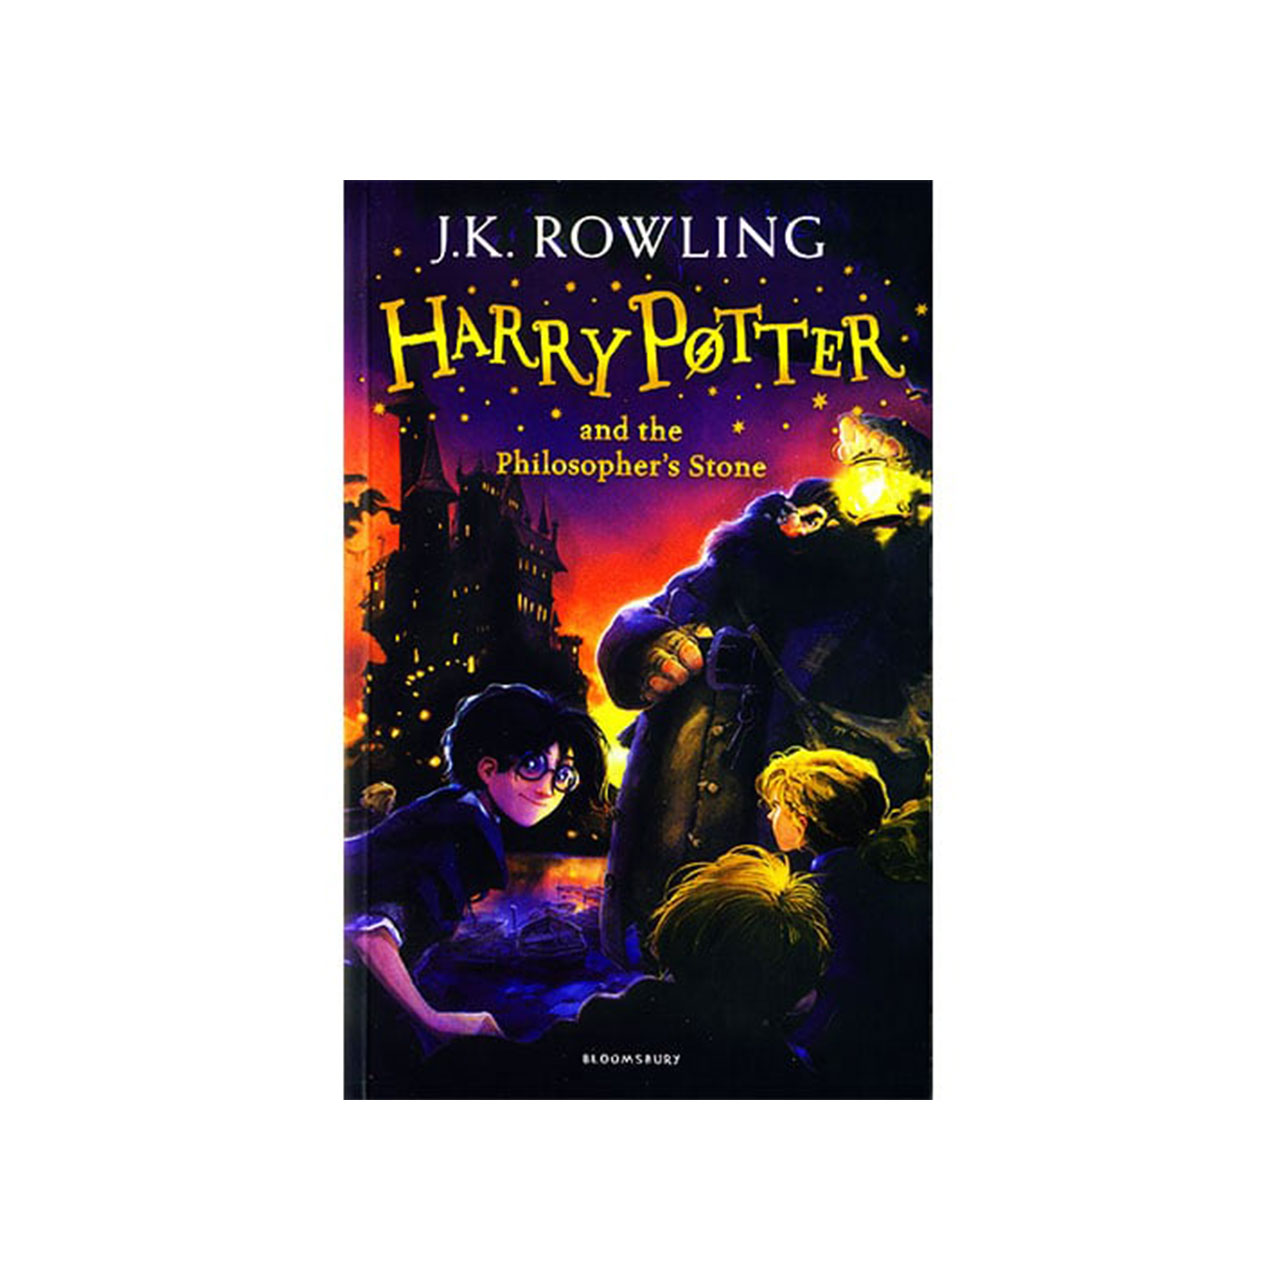 آنباکس کتاب Harry Potter 1 اثر j.k rowling انتشارات bloomsbury توسط فاطمه مرادی در تاریخ ۰۴ آذر ۱۳۹۹